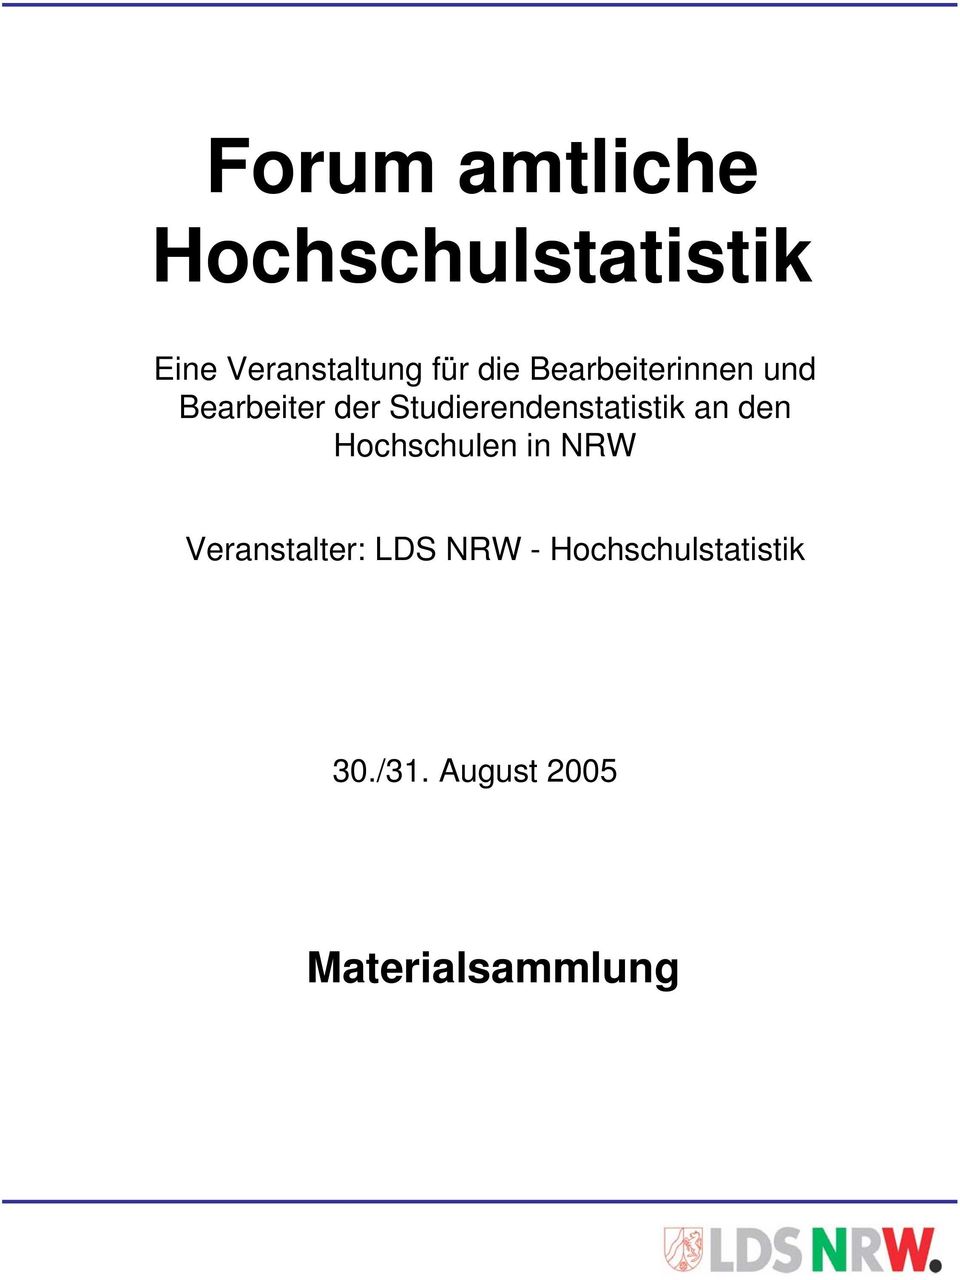 Studierendenstatistik an den Hochschulen in NRW